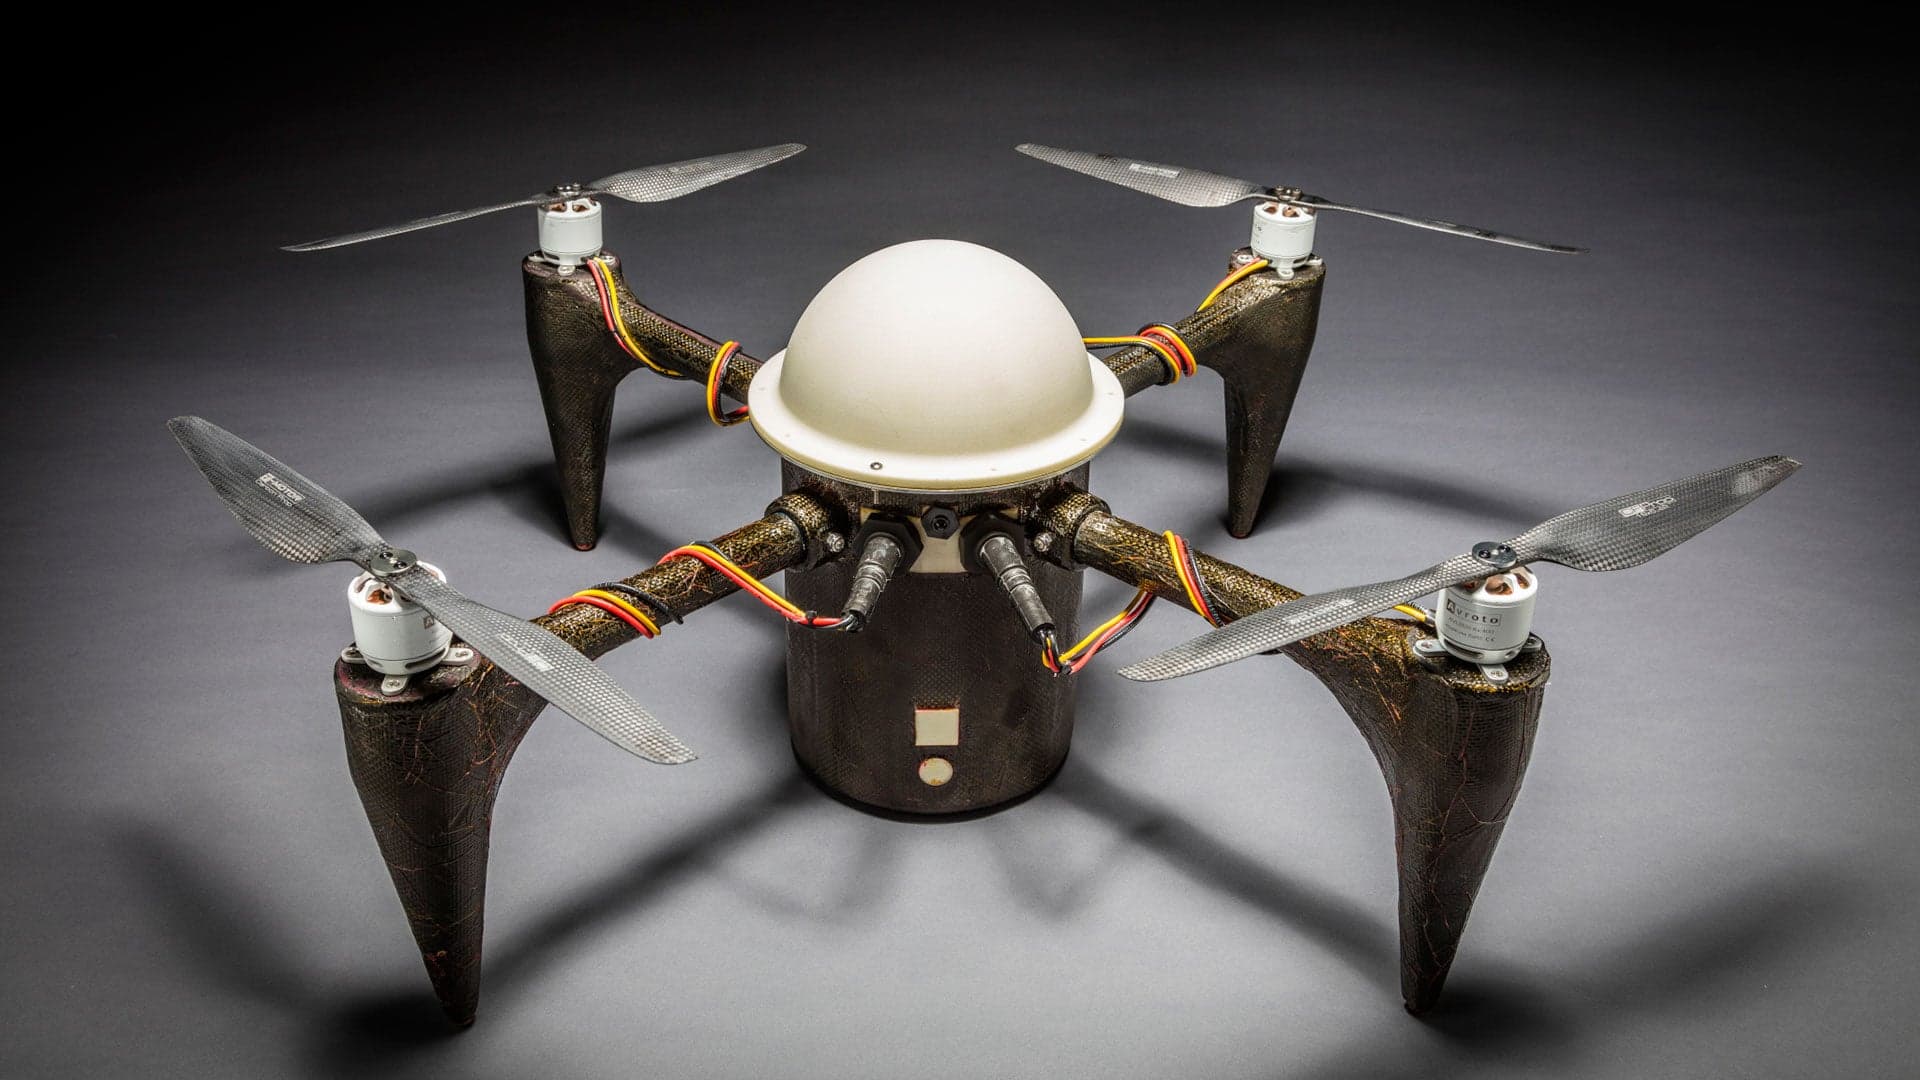 Johns Hopkins Built an Amphibious Quadcopter Drone